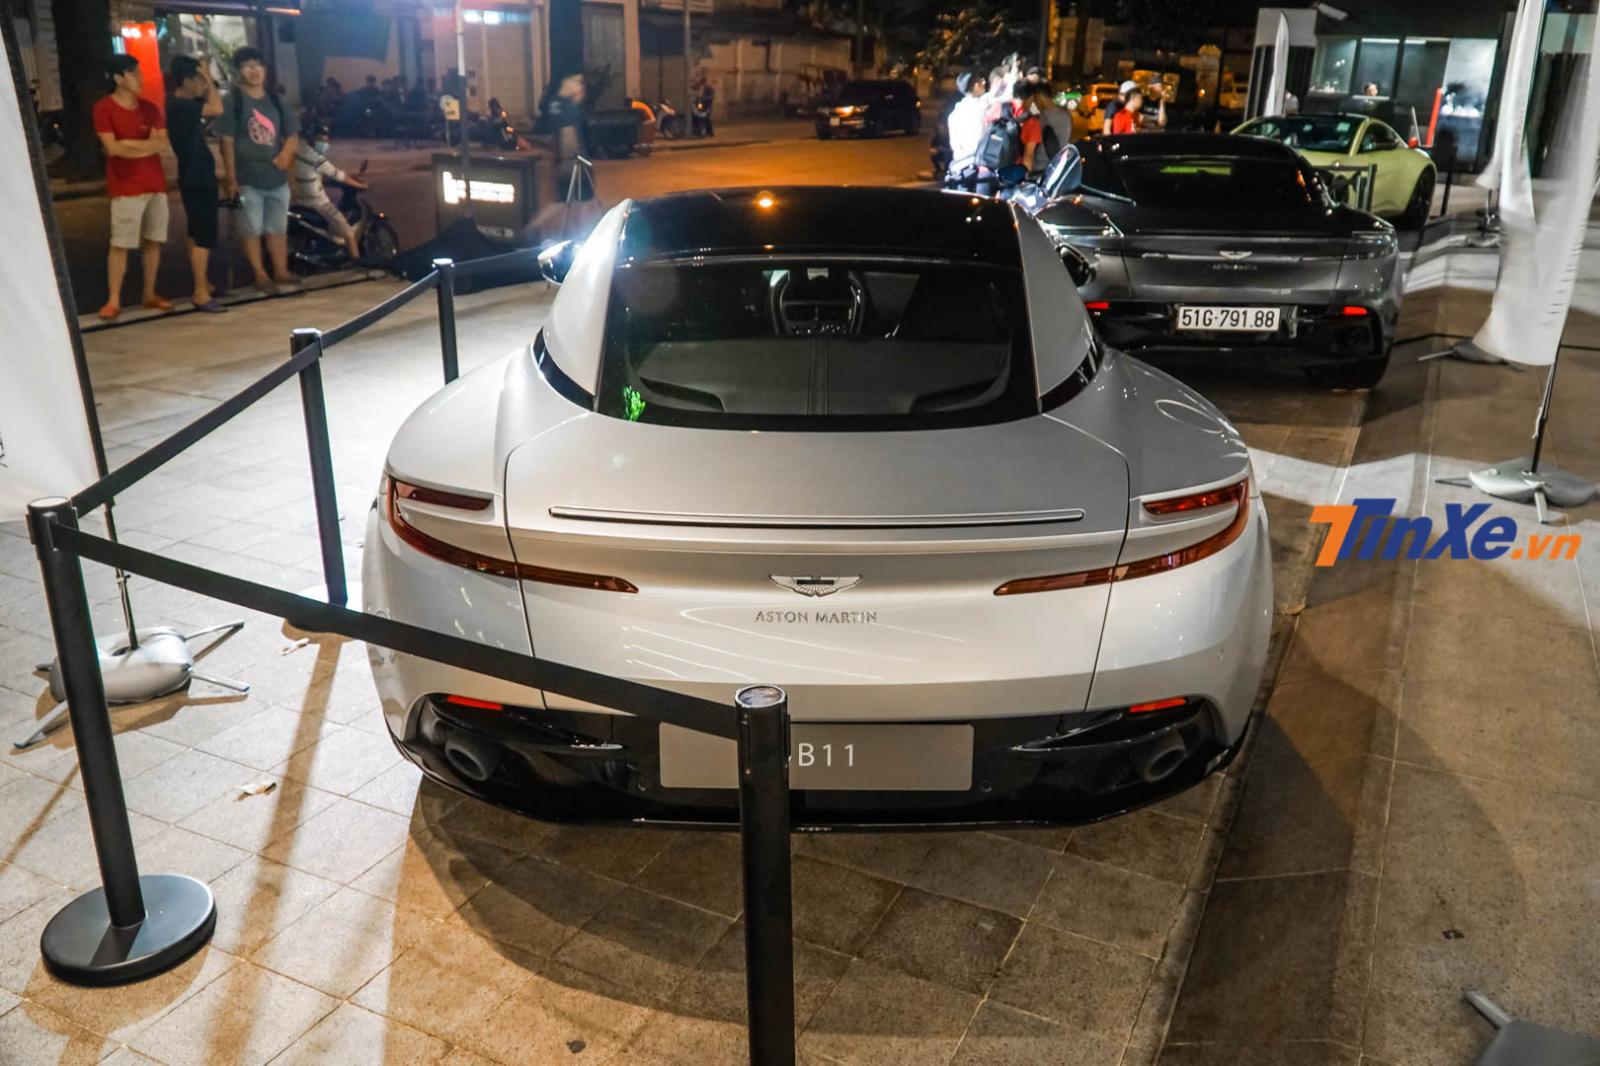 Siêu xe Aston Martin DB11 V8 của doanh nhân Vũng Tàu chưa được đăng ký biển số